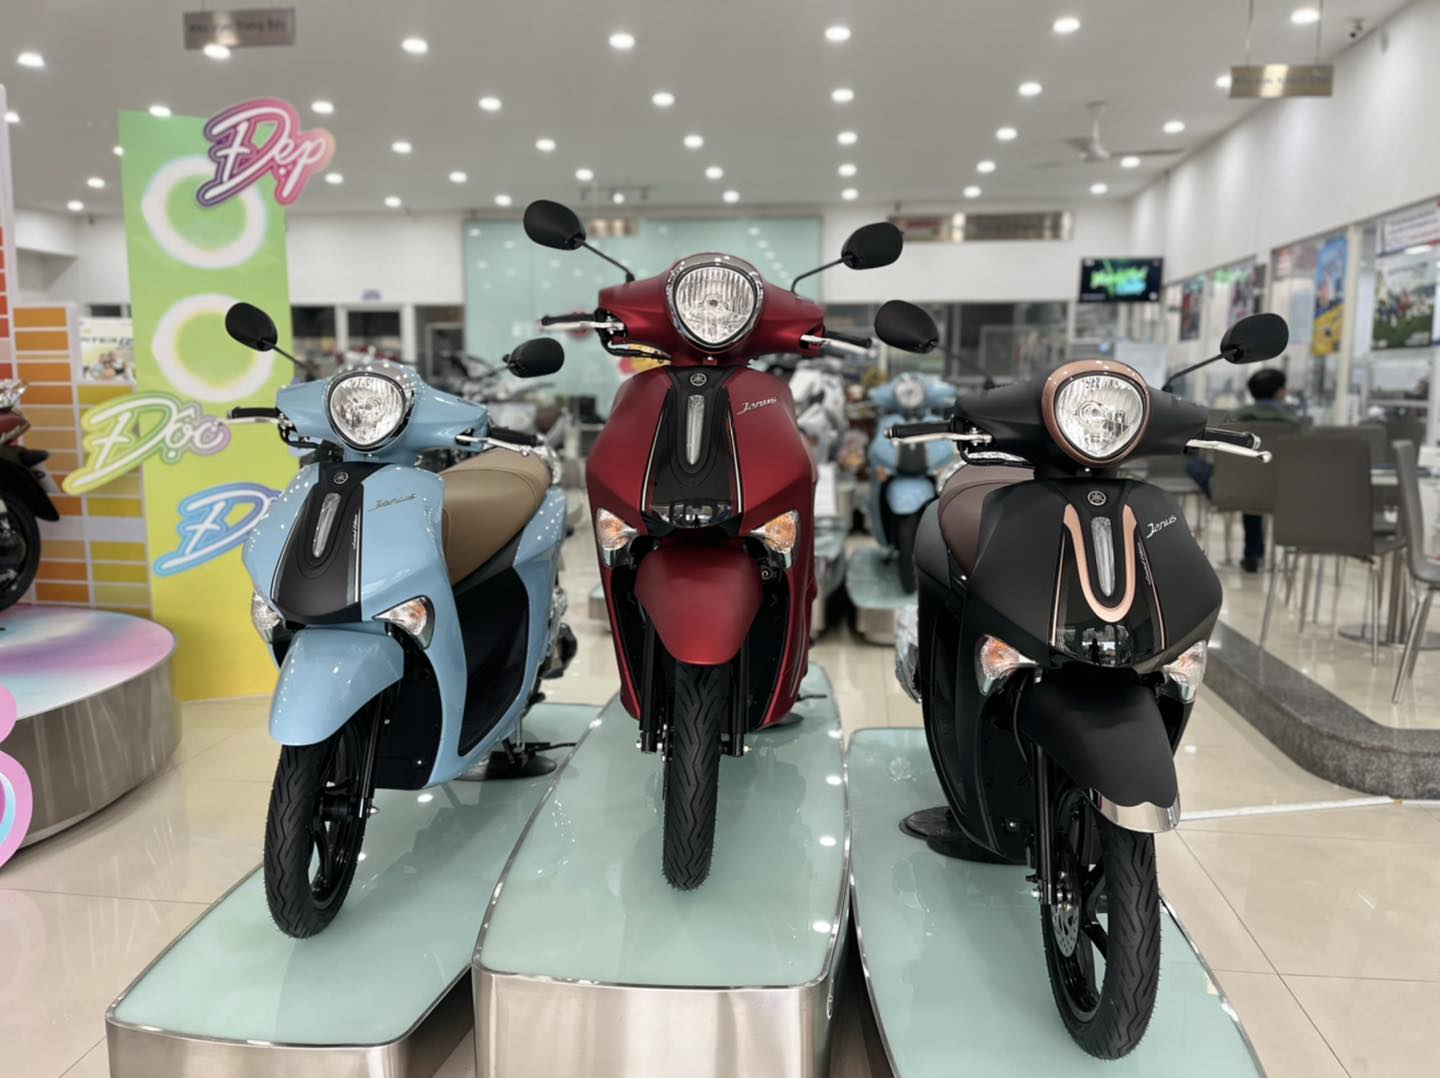 mua xe máy Yamaha giá tốt tại Hóc Môn